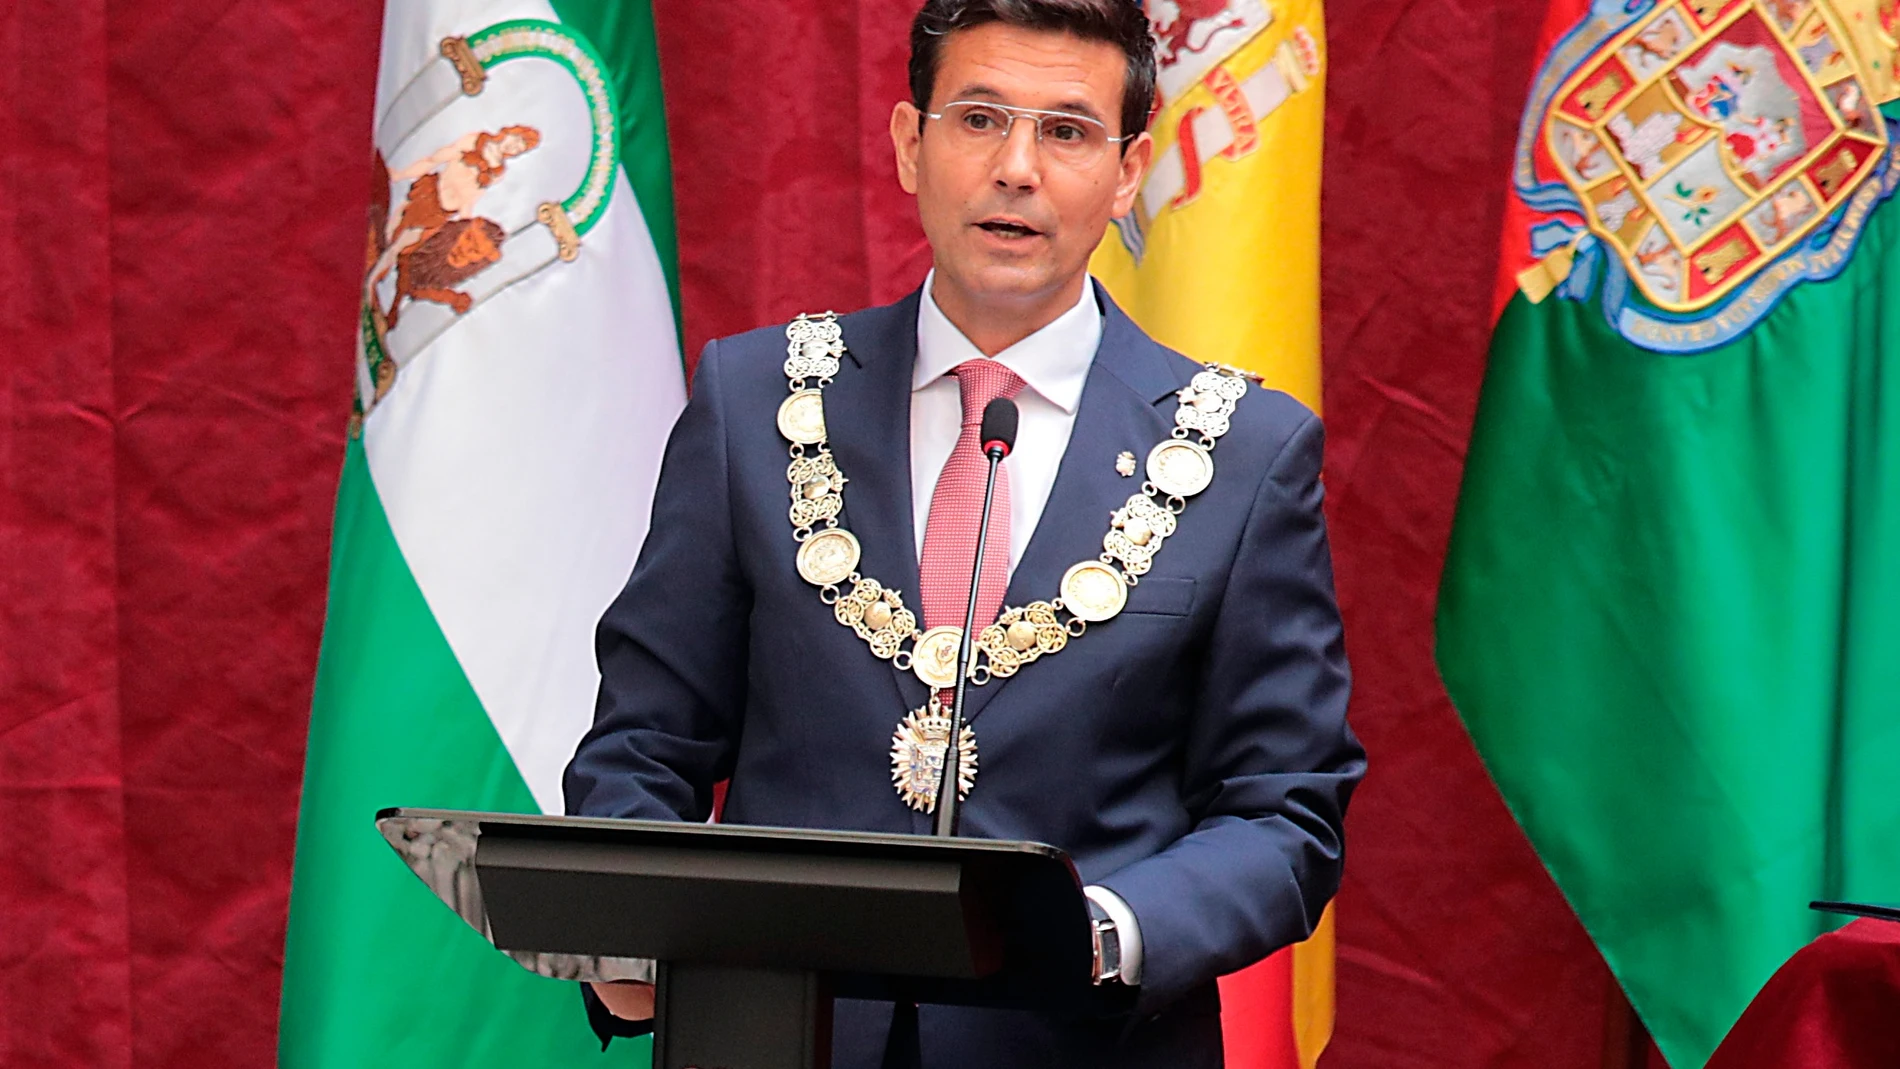 Francisco Cuenca, momentos después de ser investido alcalde de Granada